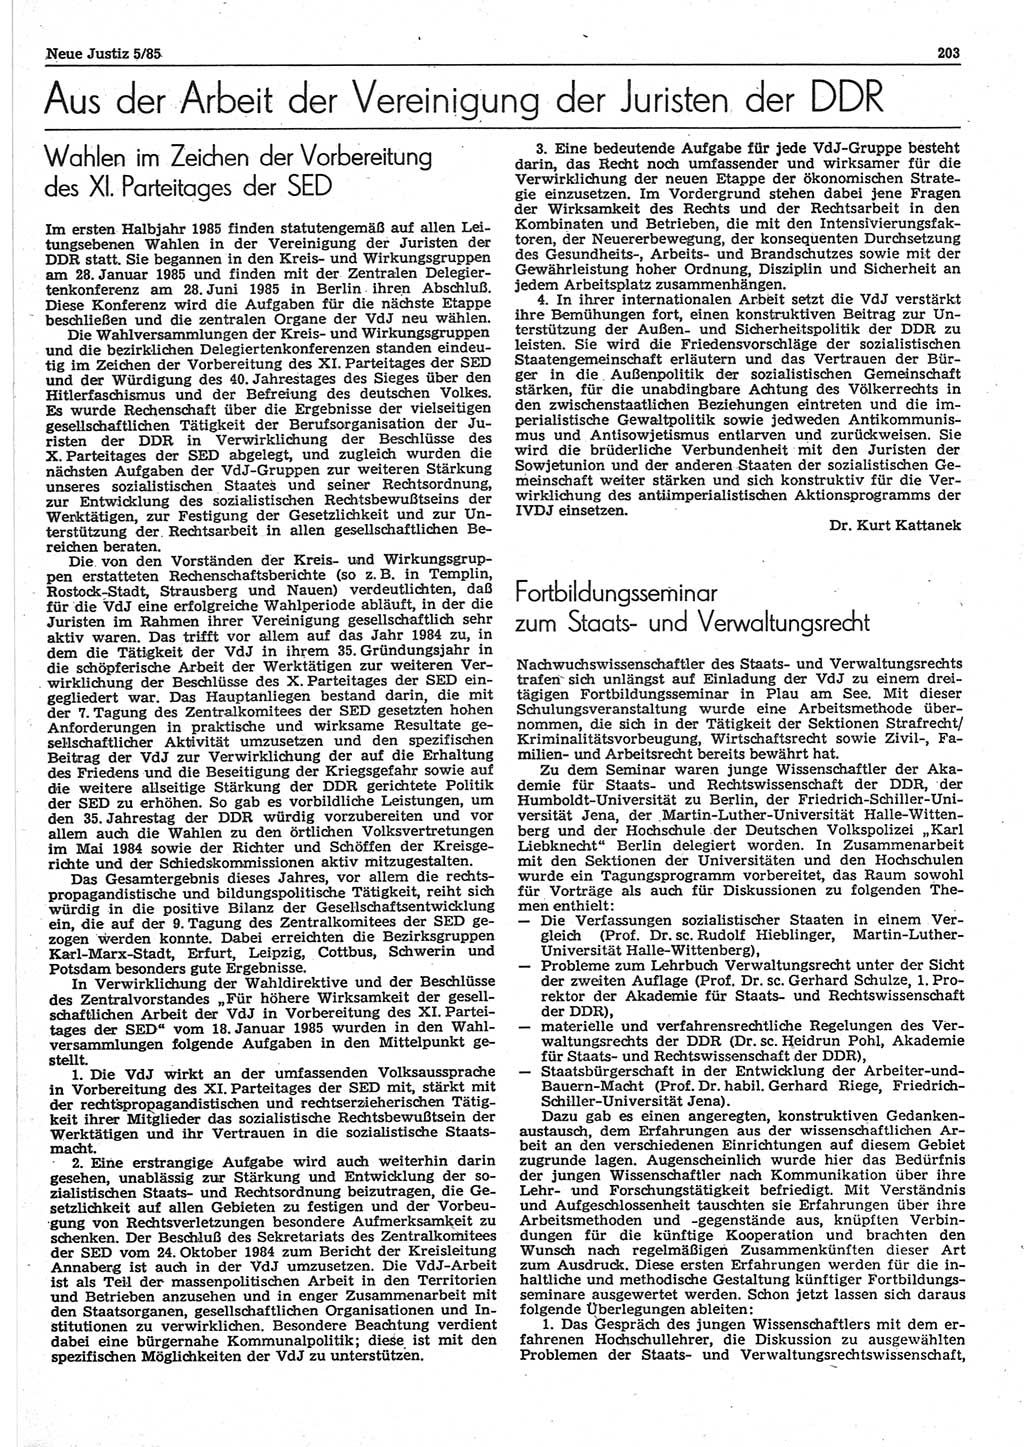 Neue Justiz (NJ), Zeitschrift für sozialistisches Recht und Gesetzlichkeit [Deutsche Demokratische Republik (DDR)], 39. Jahrgang 1985, Seite 203 (NJ DDR 1985, S. 203)